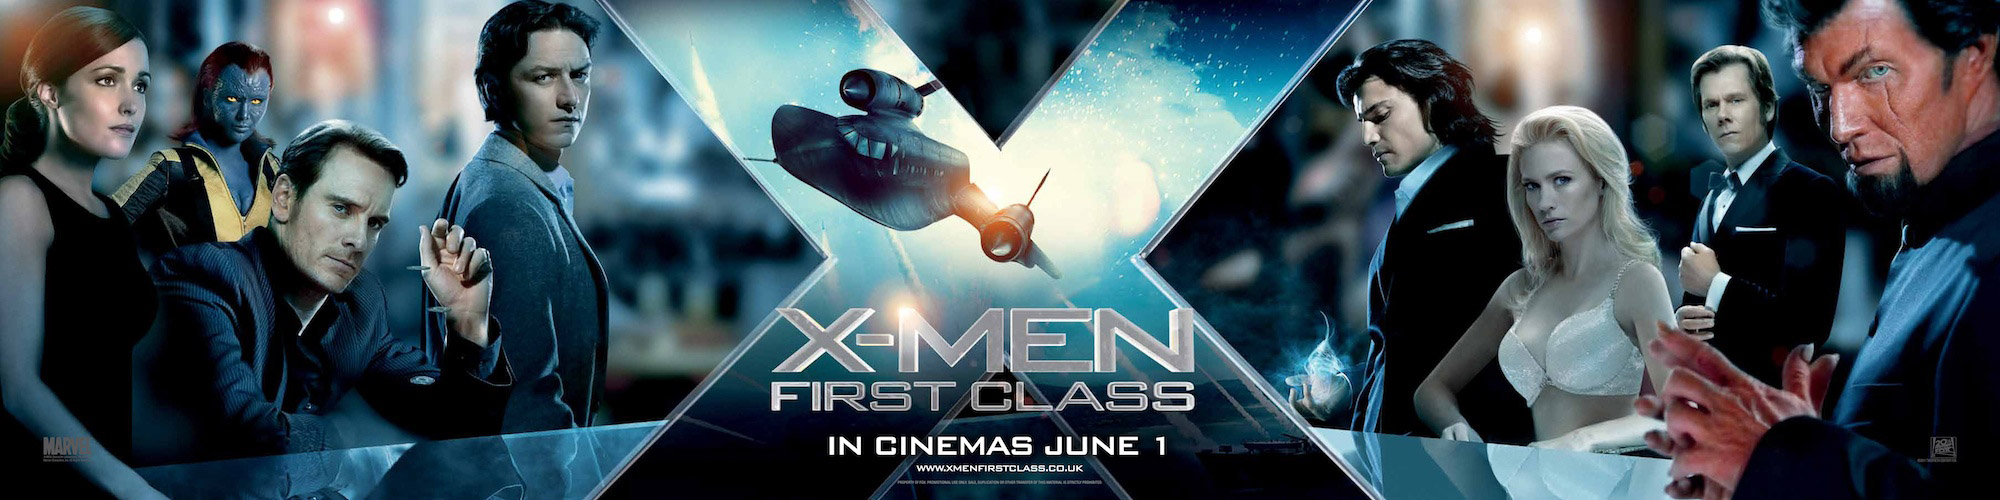 X-Men First Class 4K 2011 big poster